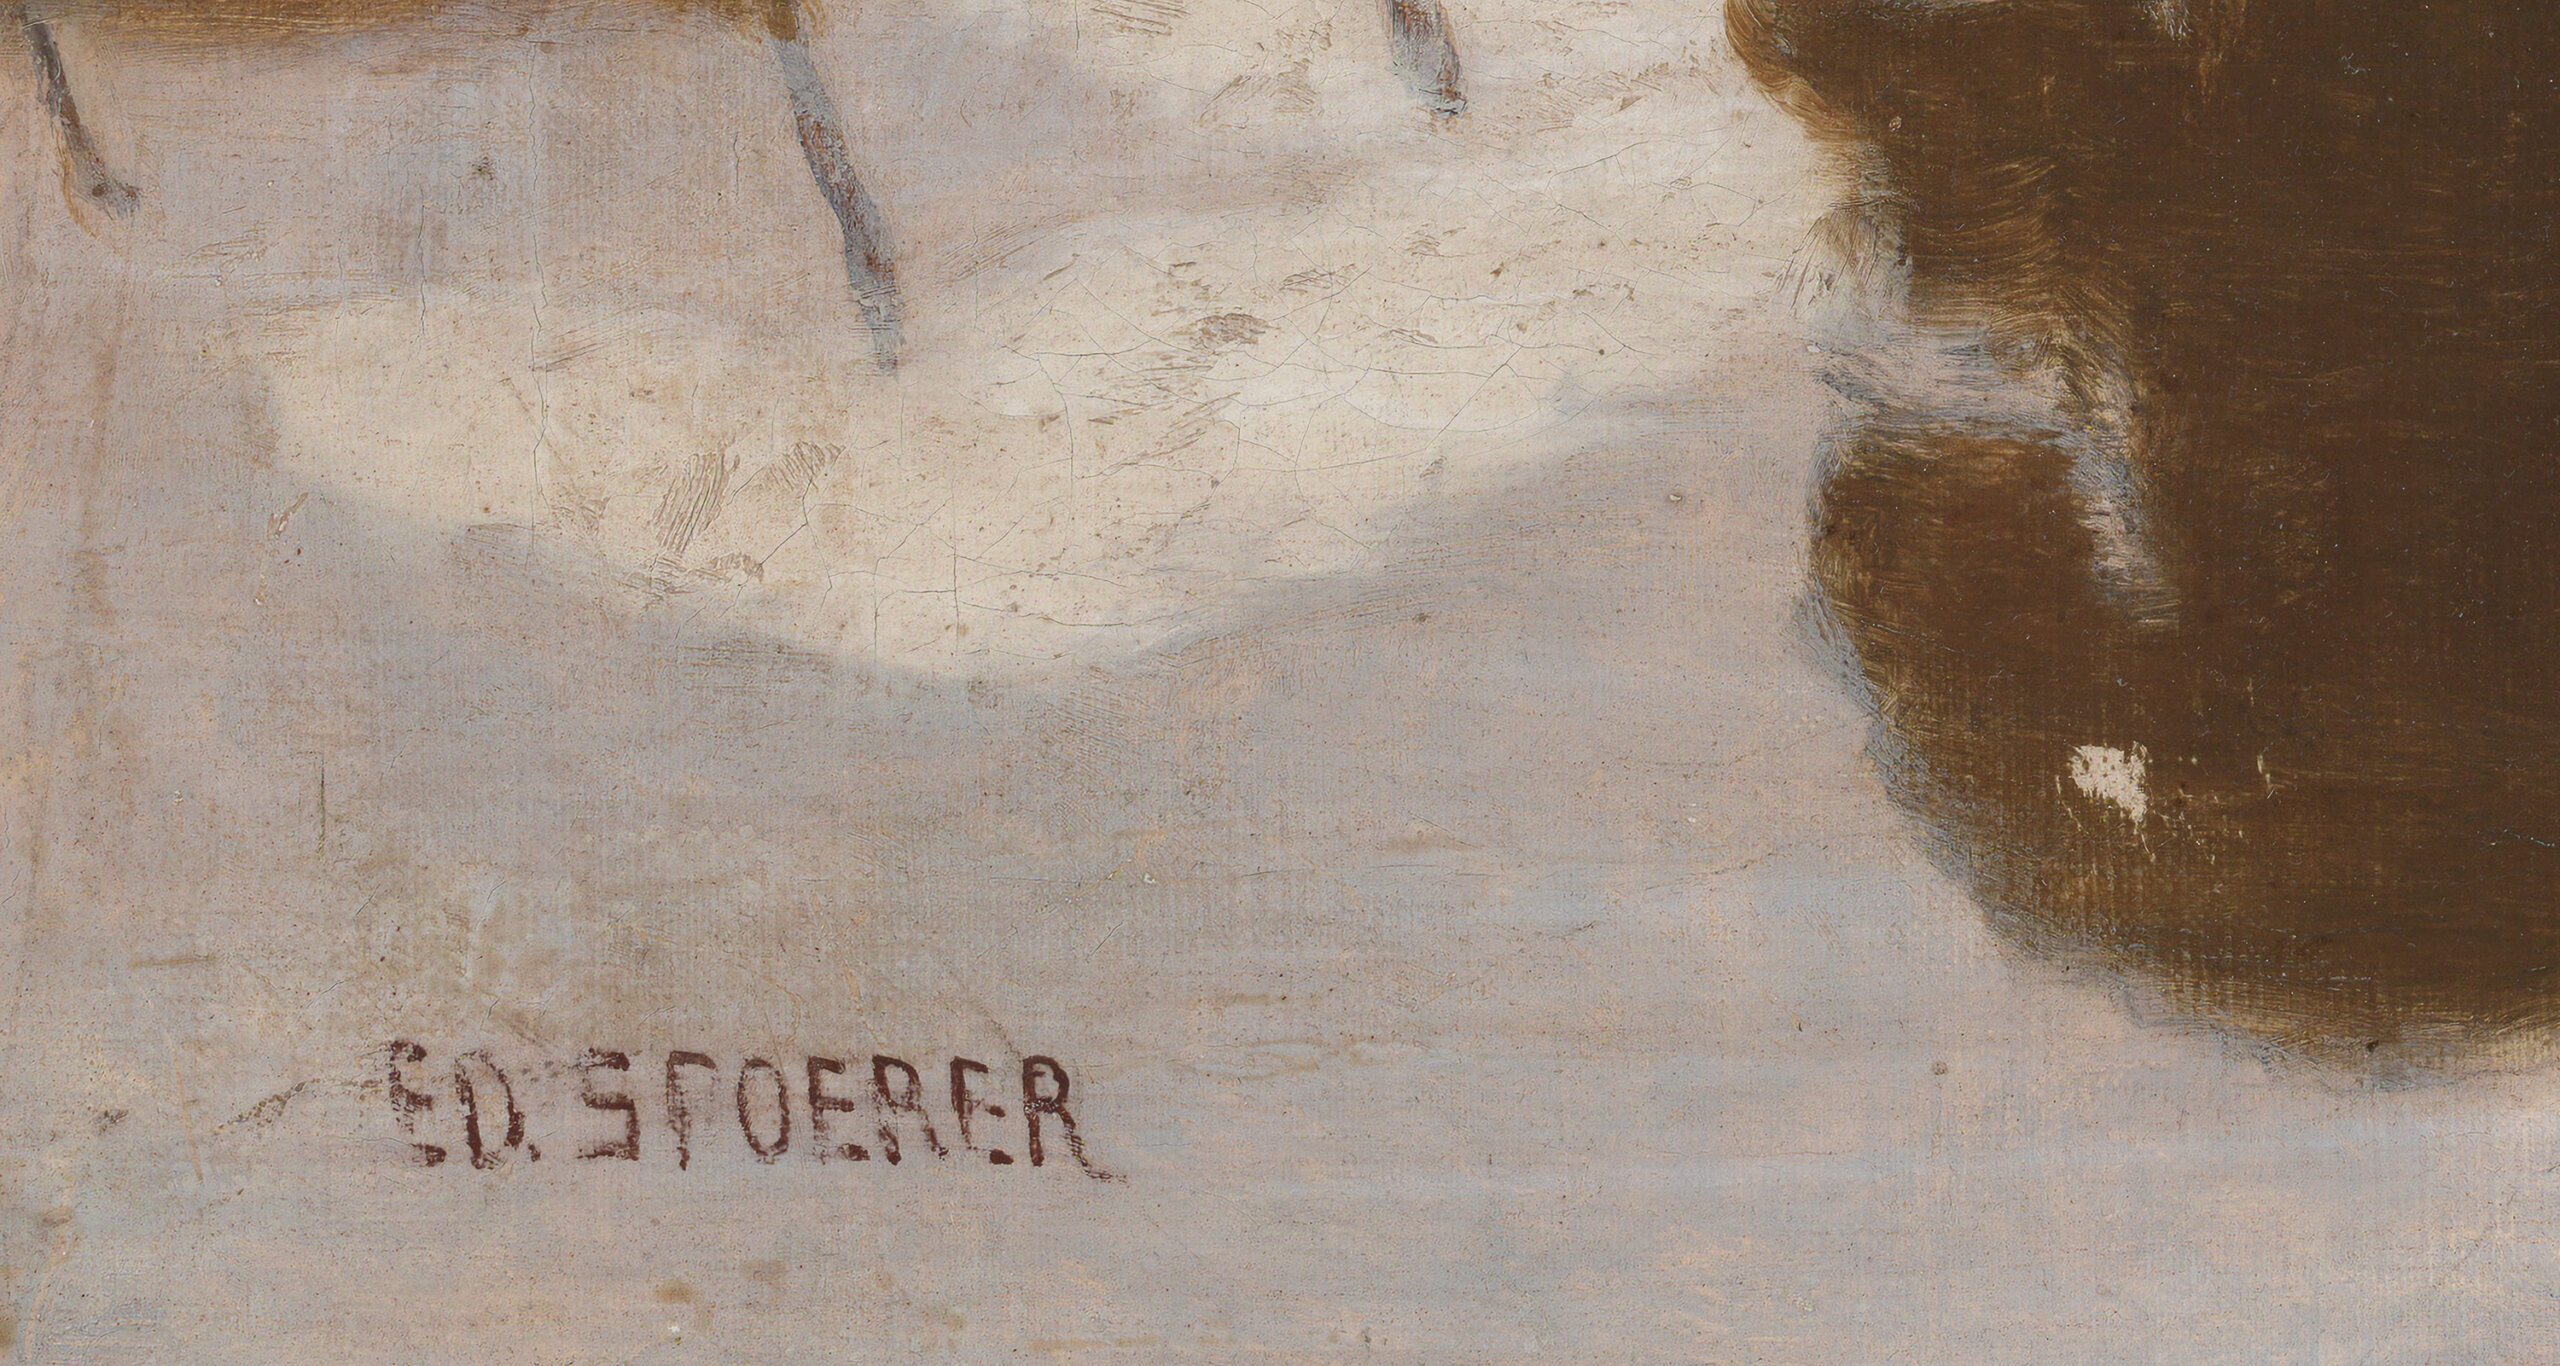 Eduard Spoerer “Heinalised” 1870ndad. 50 x 70,5 cm.